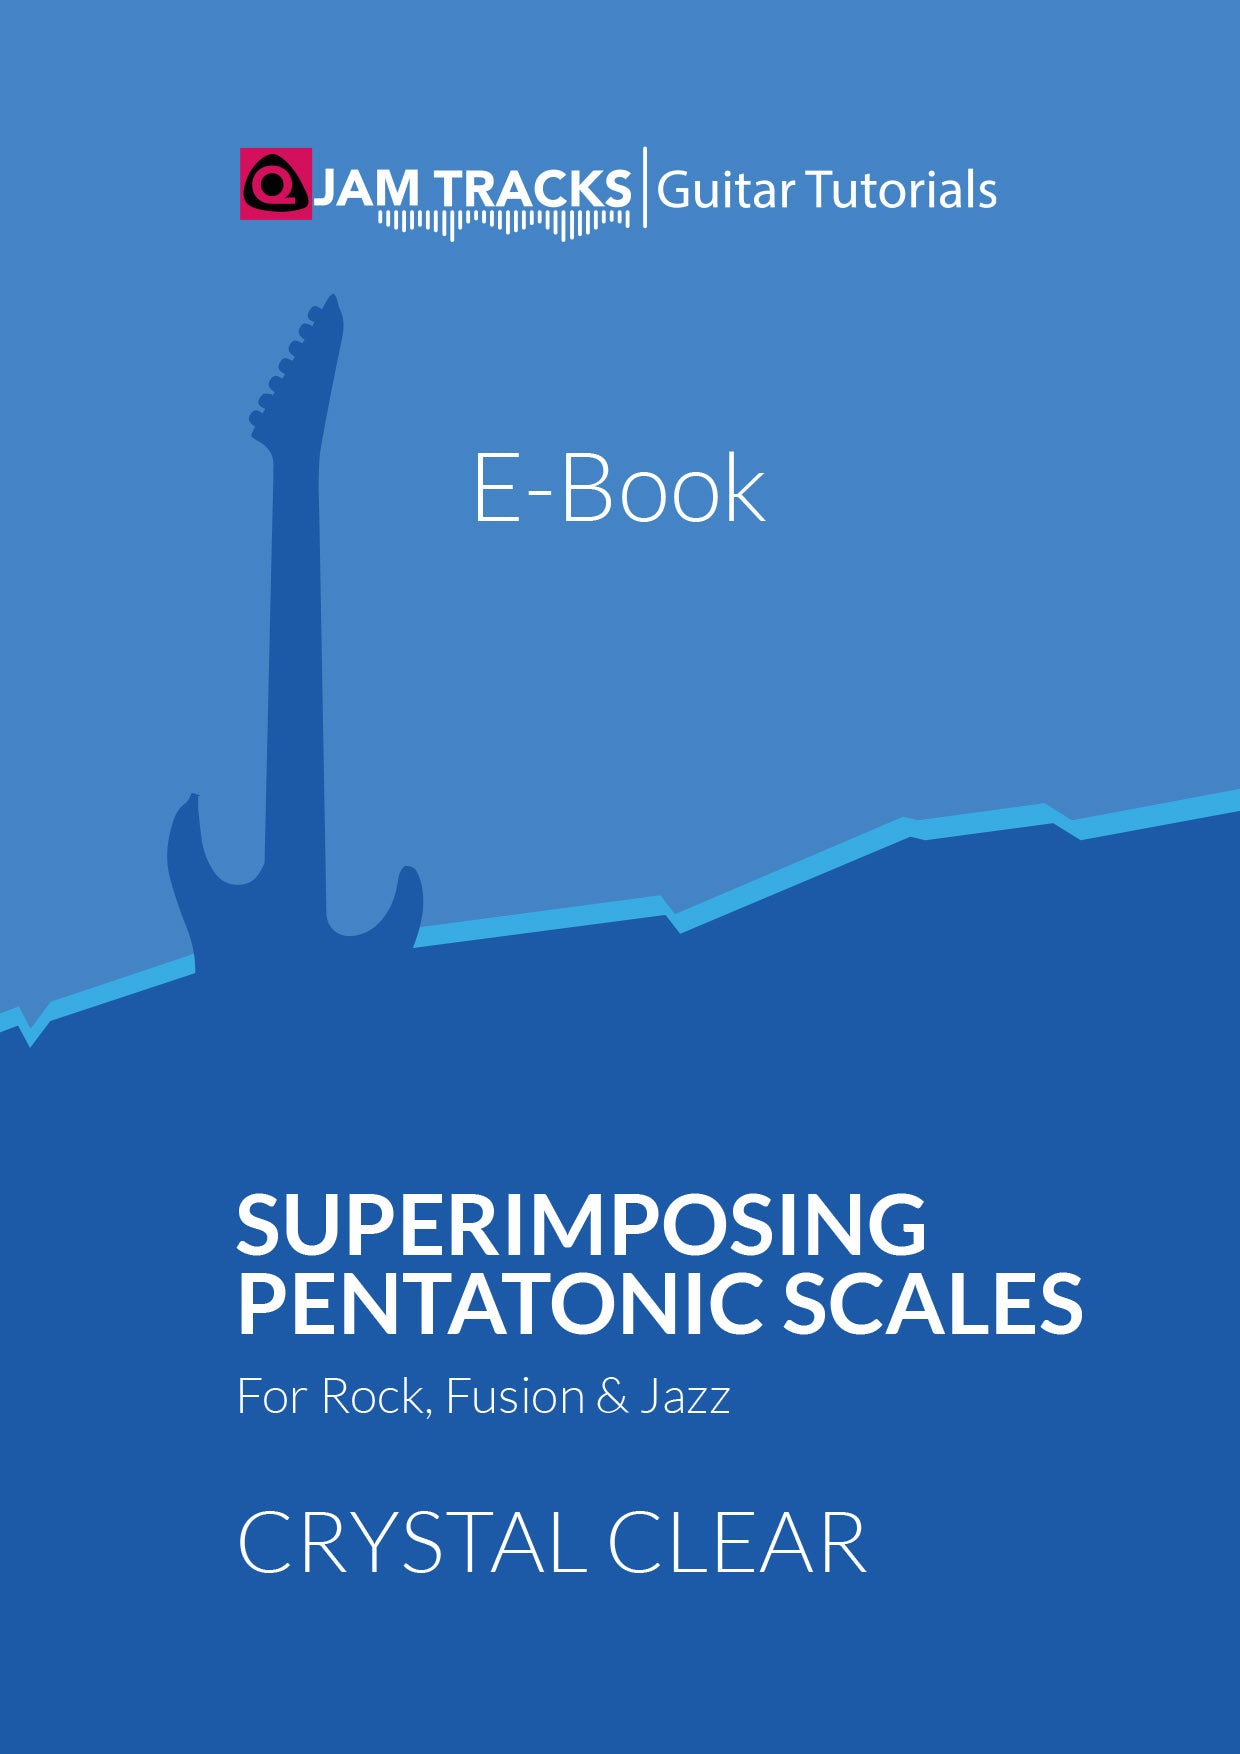 Major Pentatonic Scales for Guitar - Jazz Guitar Guide